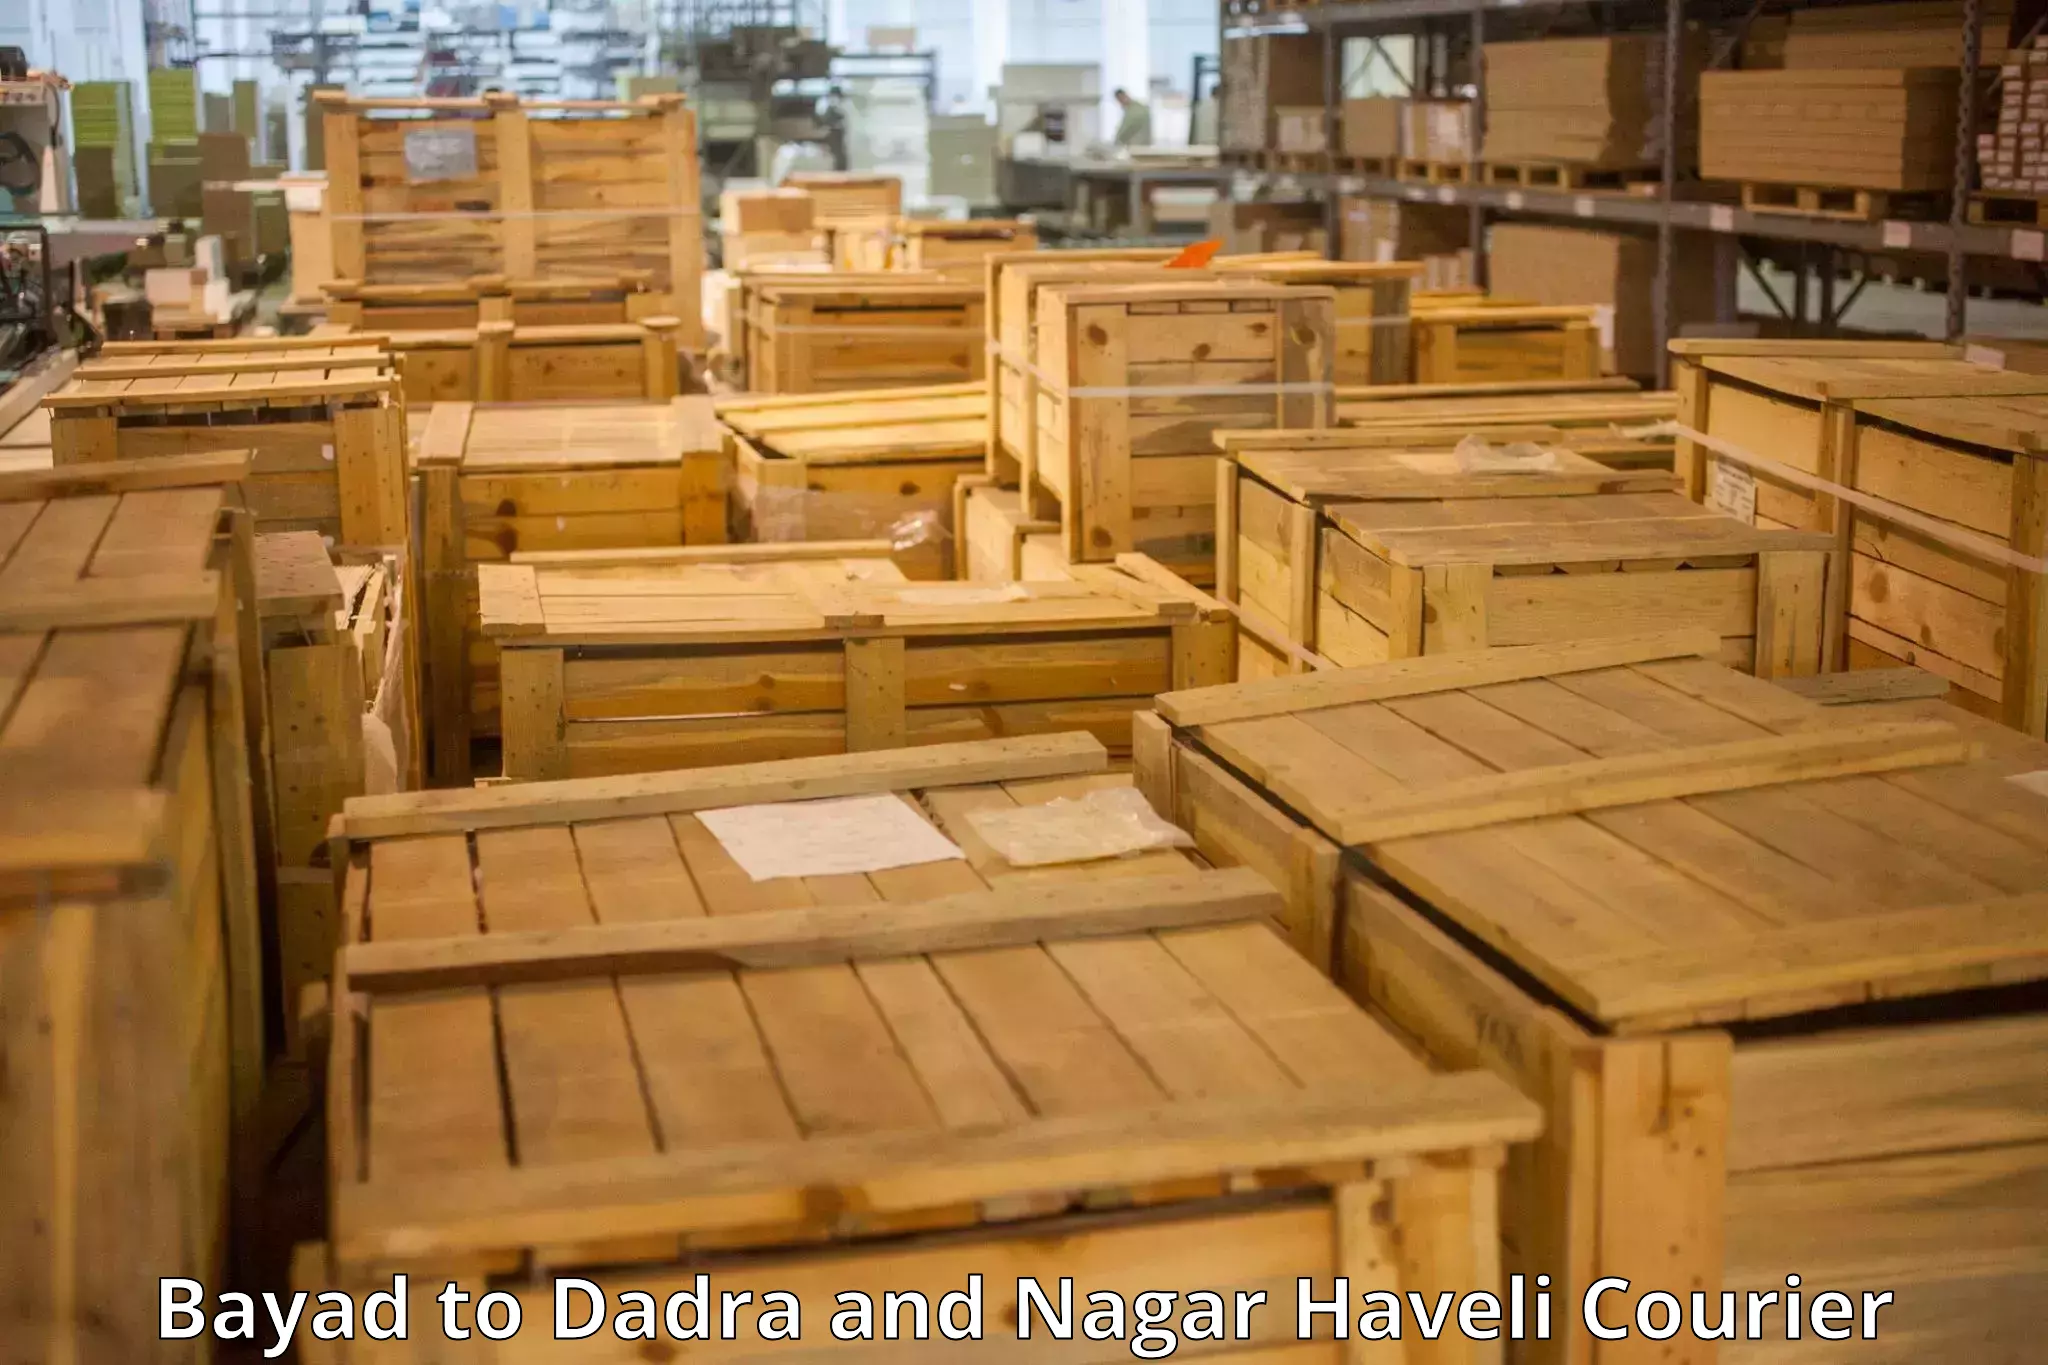 Baggage shipping experience Bayad to Dadra and Nagar Haveli